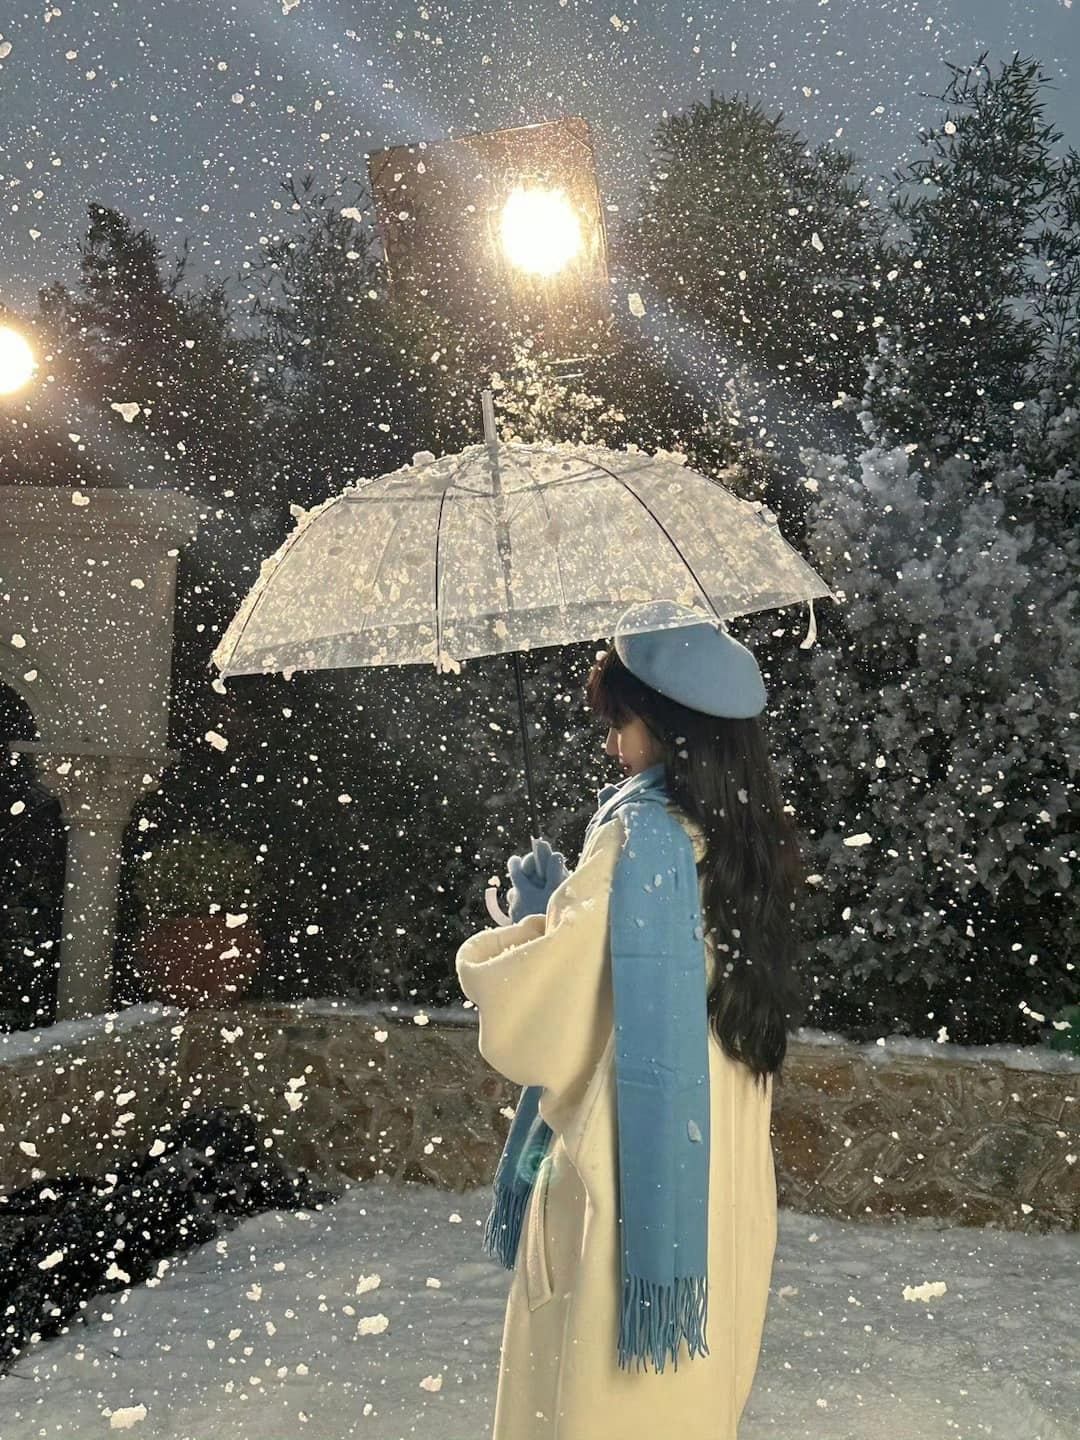 Điền Hi Vi hóa 'cô bé mùa đông' trong bộ ảnh mới, nhan sắc được netizen hết lời khen ngợi  - Ảnh 5